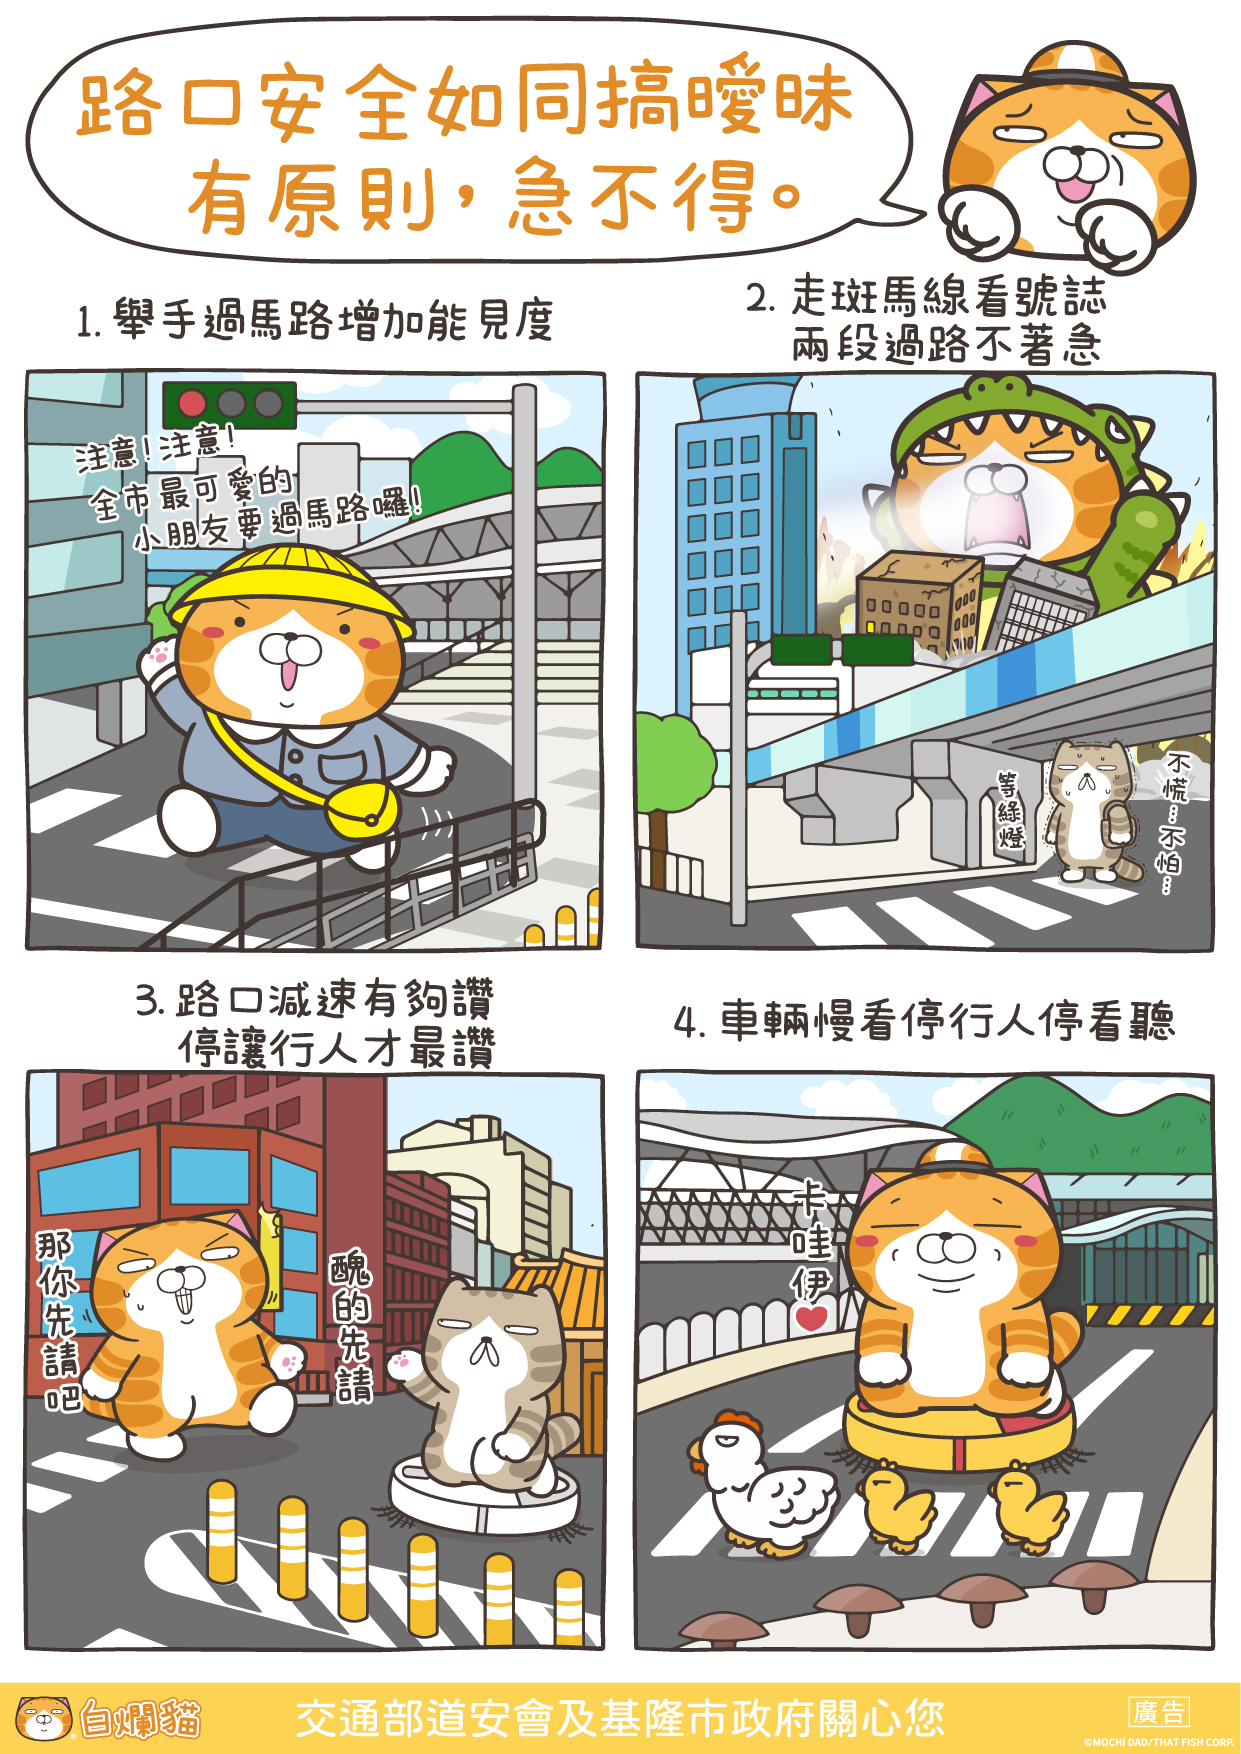 基隆市政府邀請知名插畫家「白爛貓」進行交安宣導 (2)